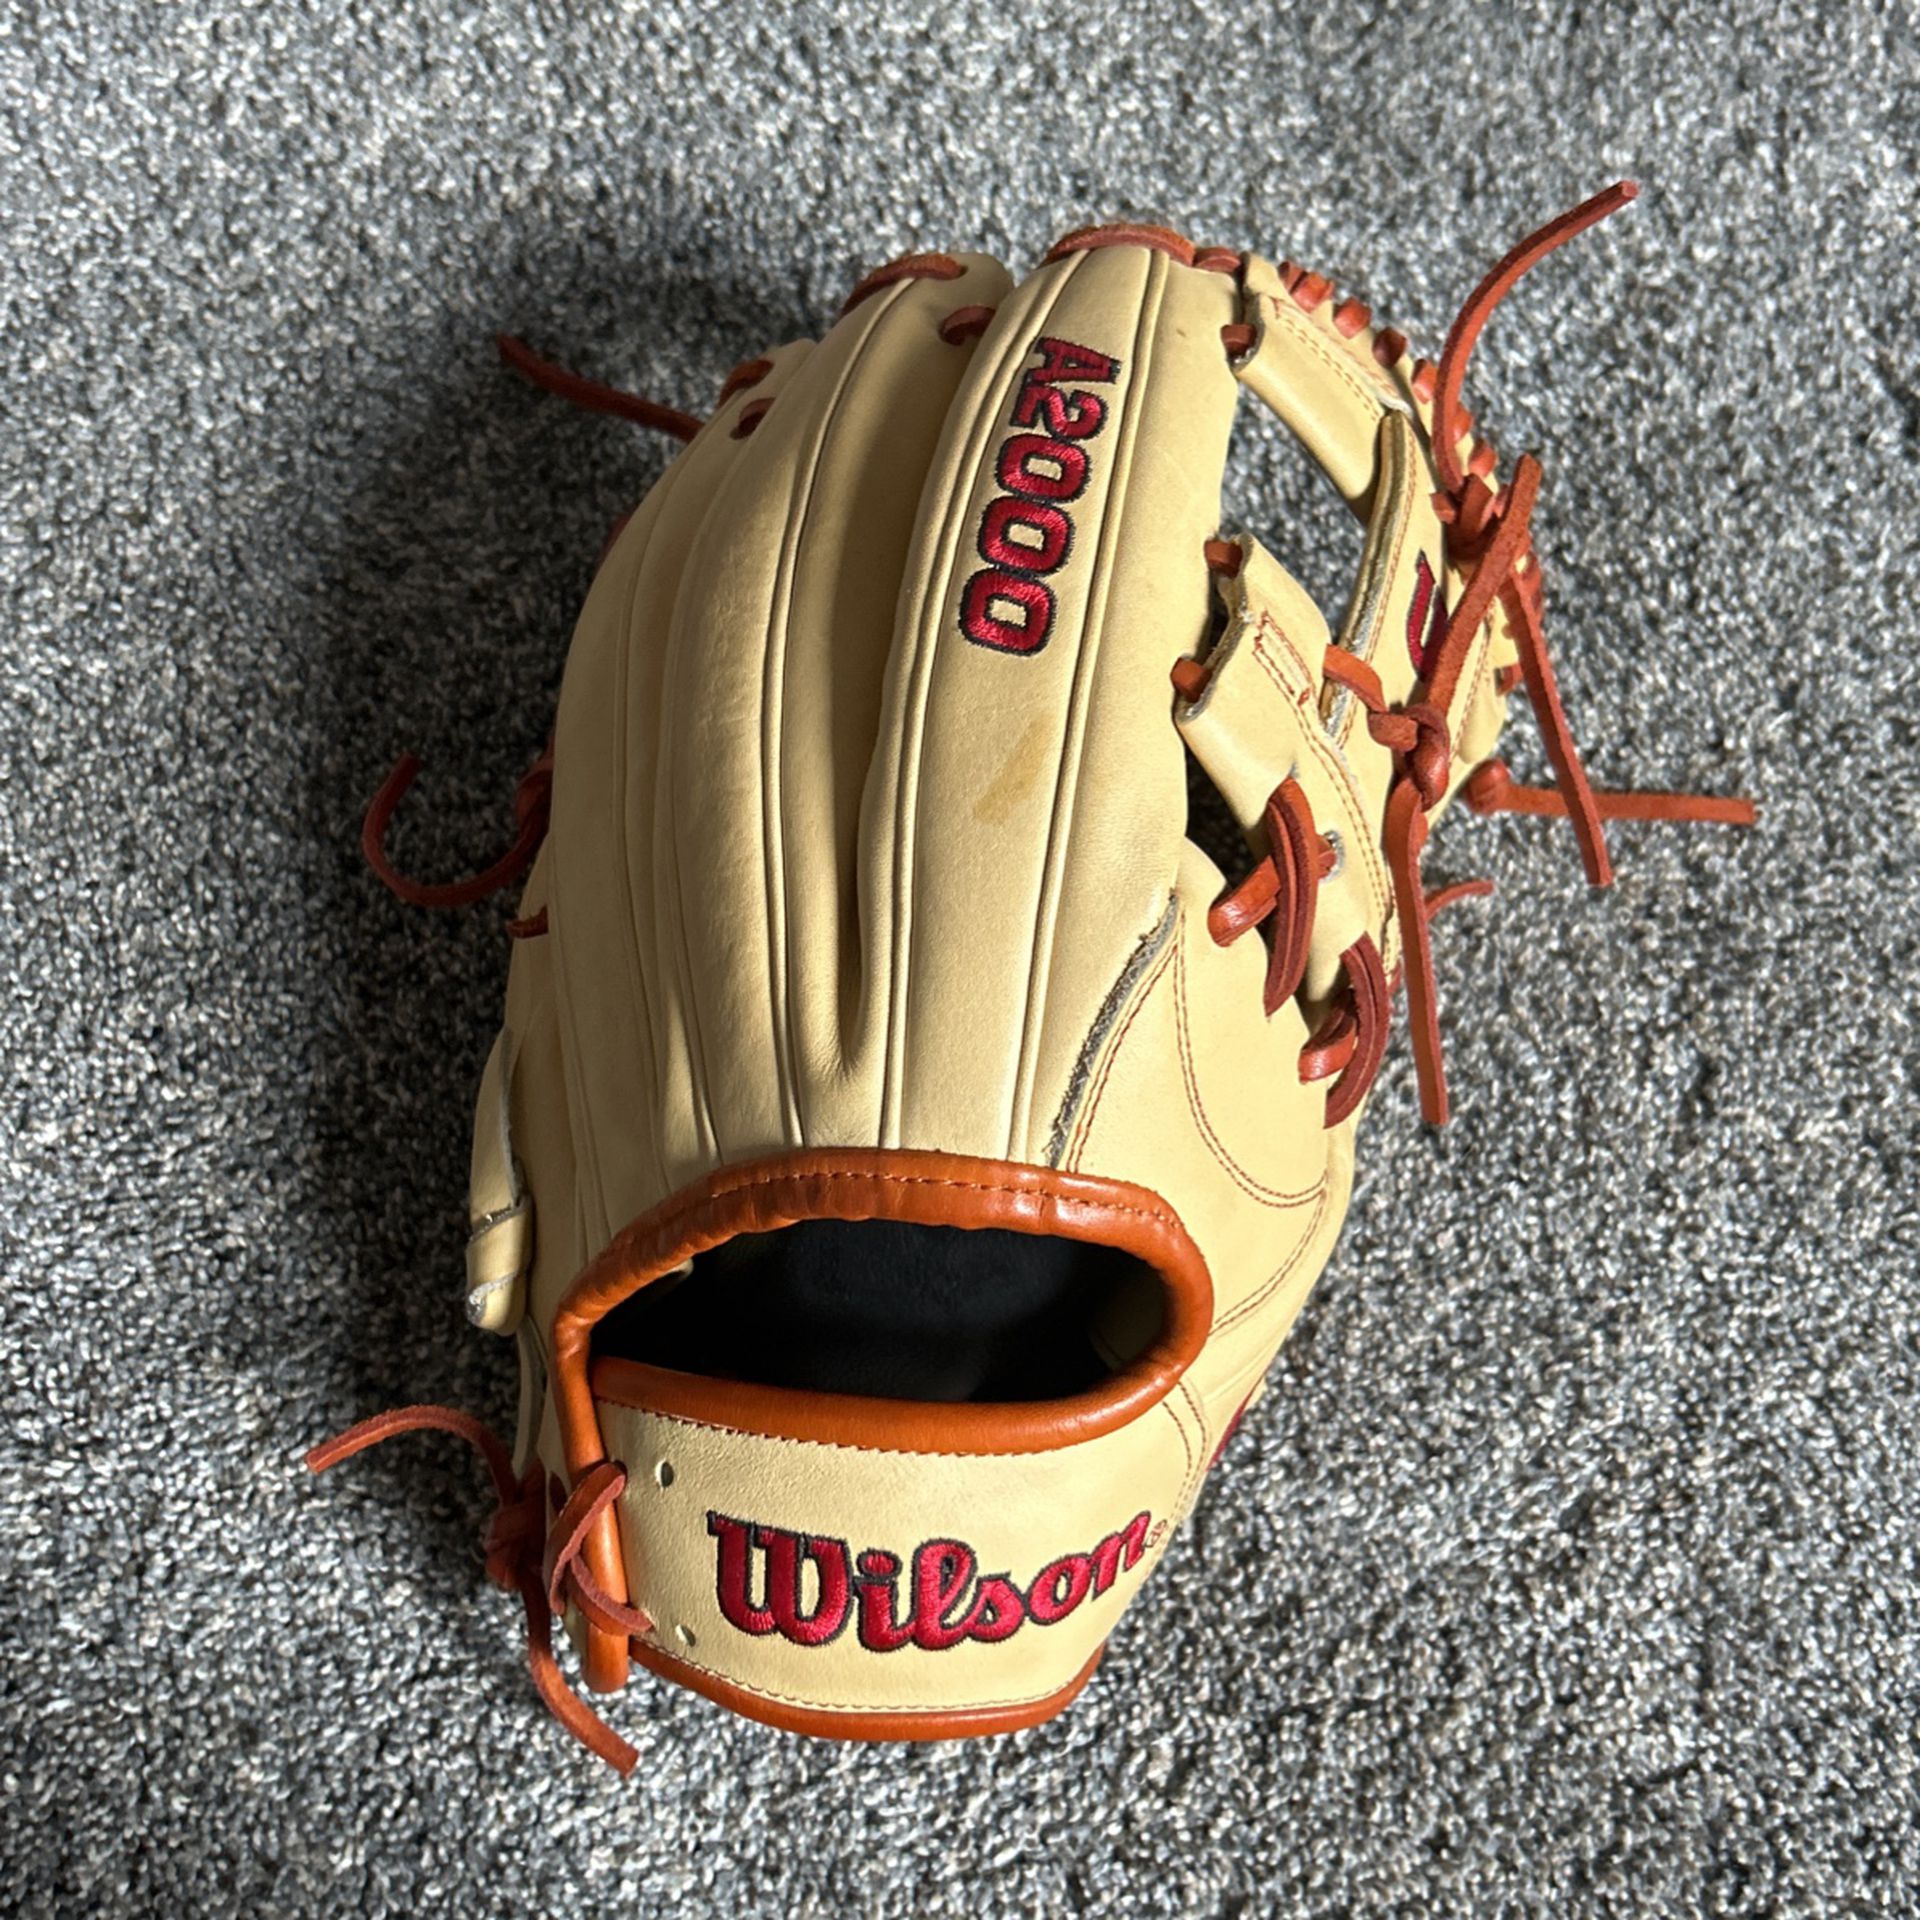 A2000 1787 11.75 Baseball Glove